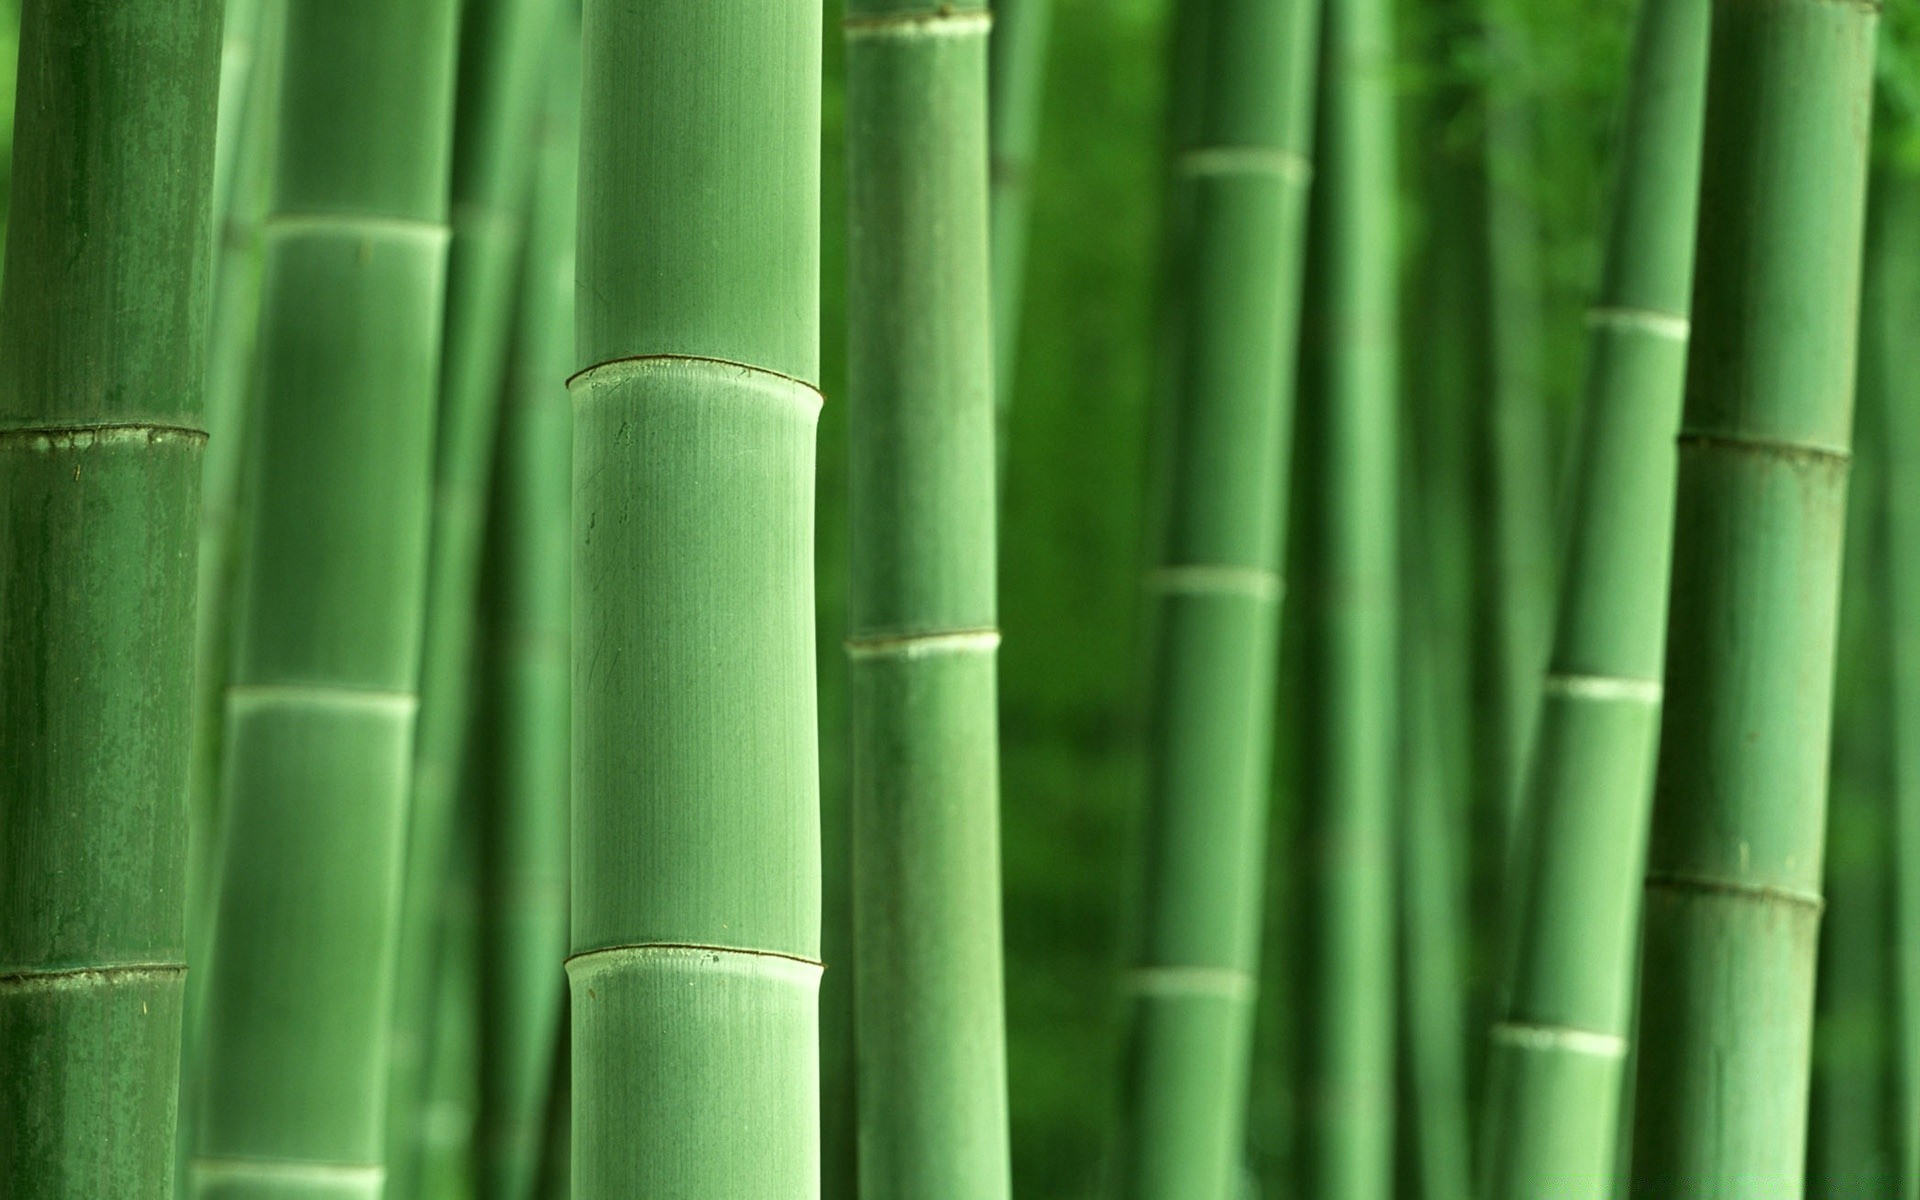 лес бамбук лист флора пышные рост сад природа дзен тропический лузга экология текстура рабочего стола ботанический аннотация среды шаблон линия